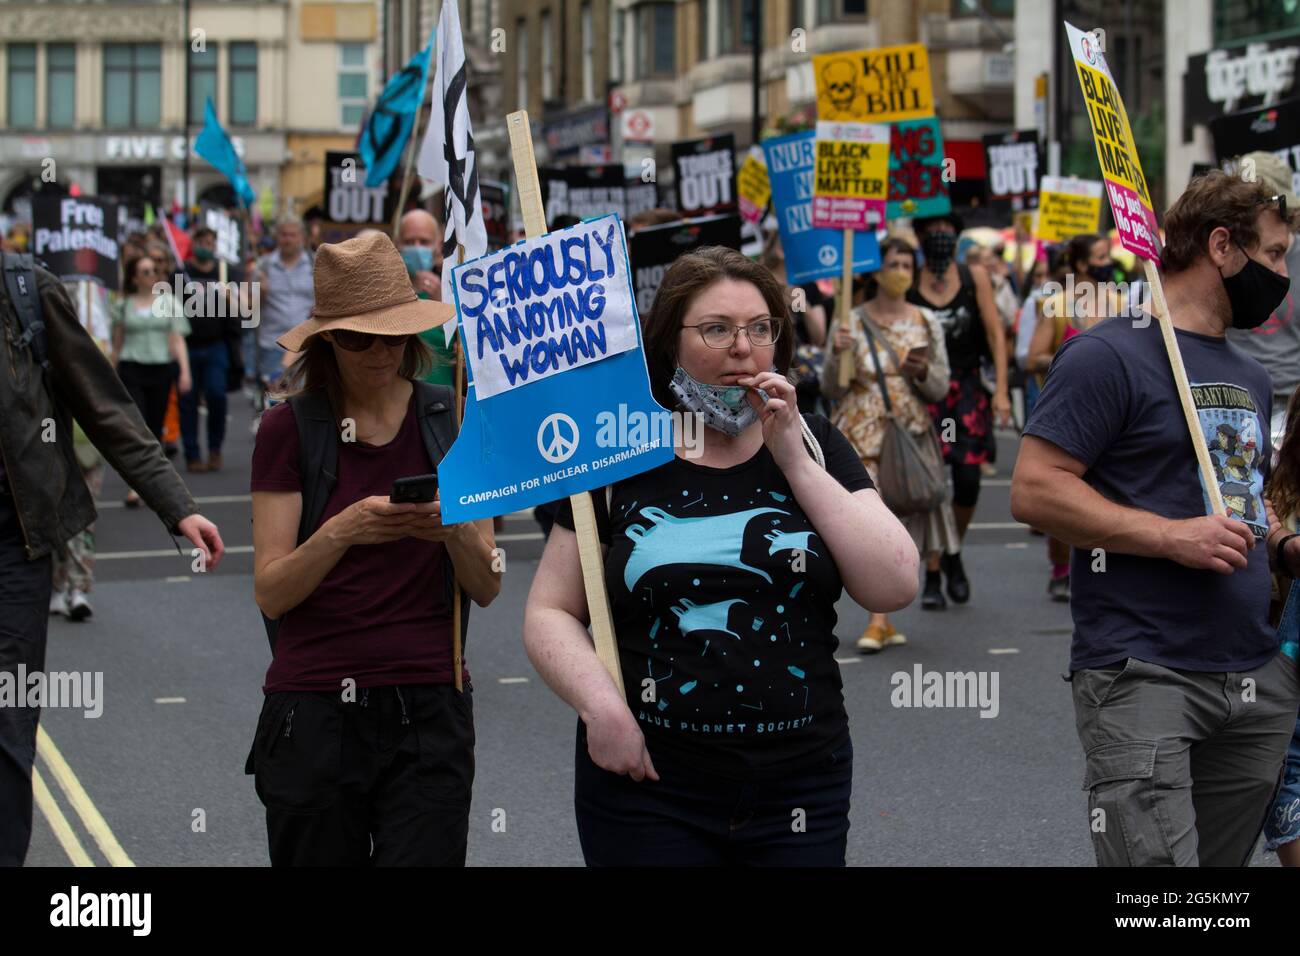 Proteste in London, Aktivisten protestieren in Zentral-London vor der Volksversammlung Nationale Demonstration weiblich mit ernsthaft nervender Frau, Kampagne für nukleare Abrüstung Plakat Stockfoto